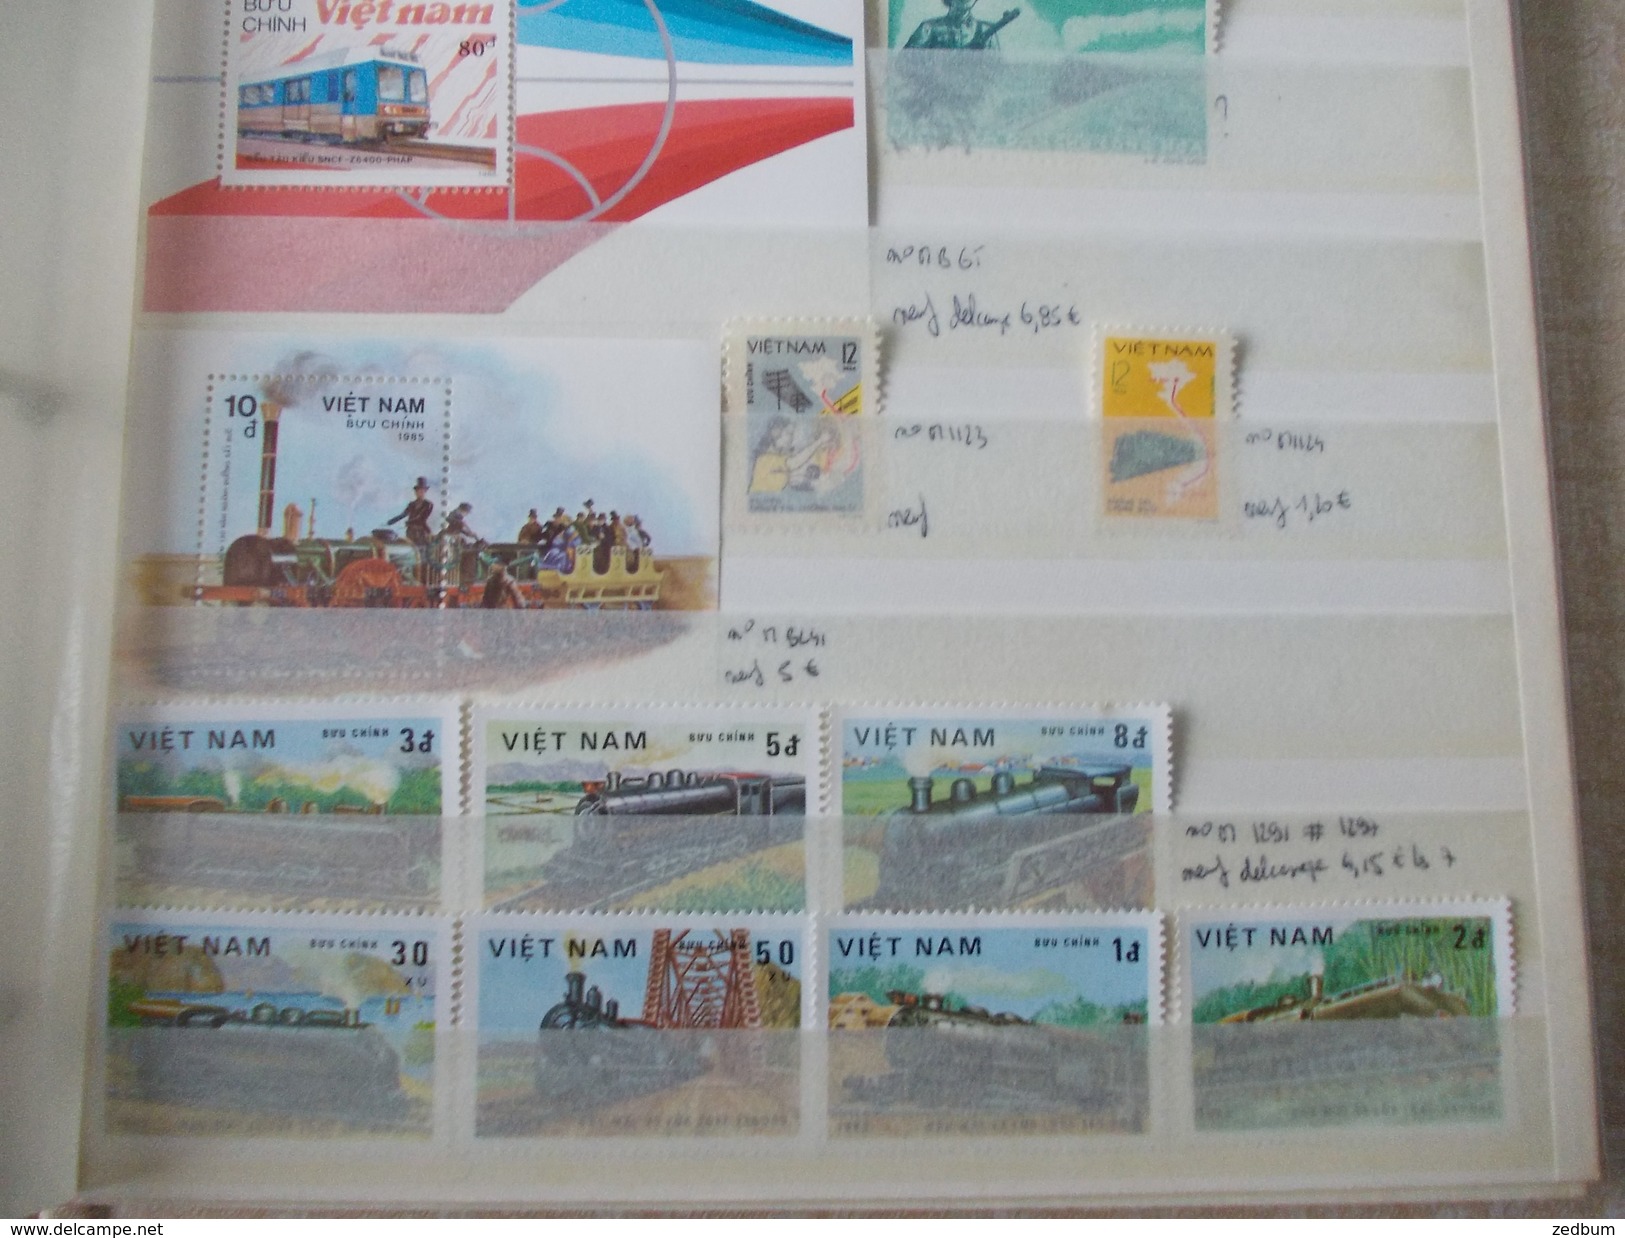 ALBUM 11 collection de timbres avec pour thème le chemin de fer train de tout pays valeur 162.40 &euro;